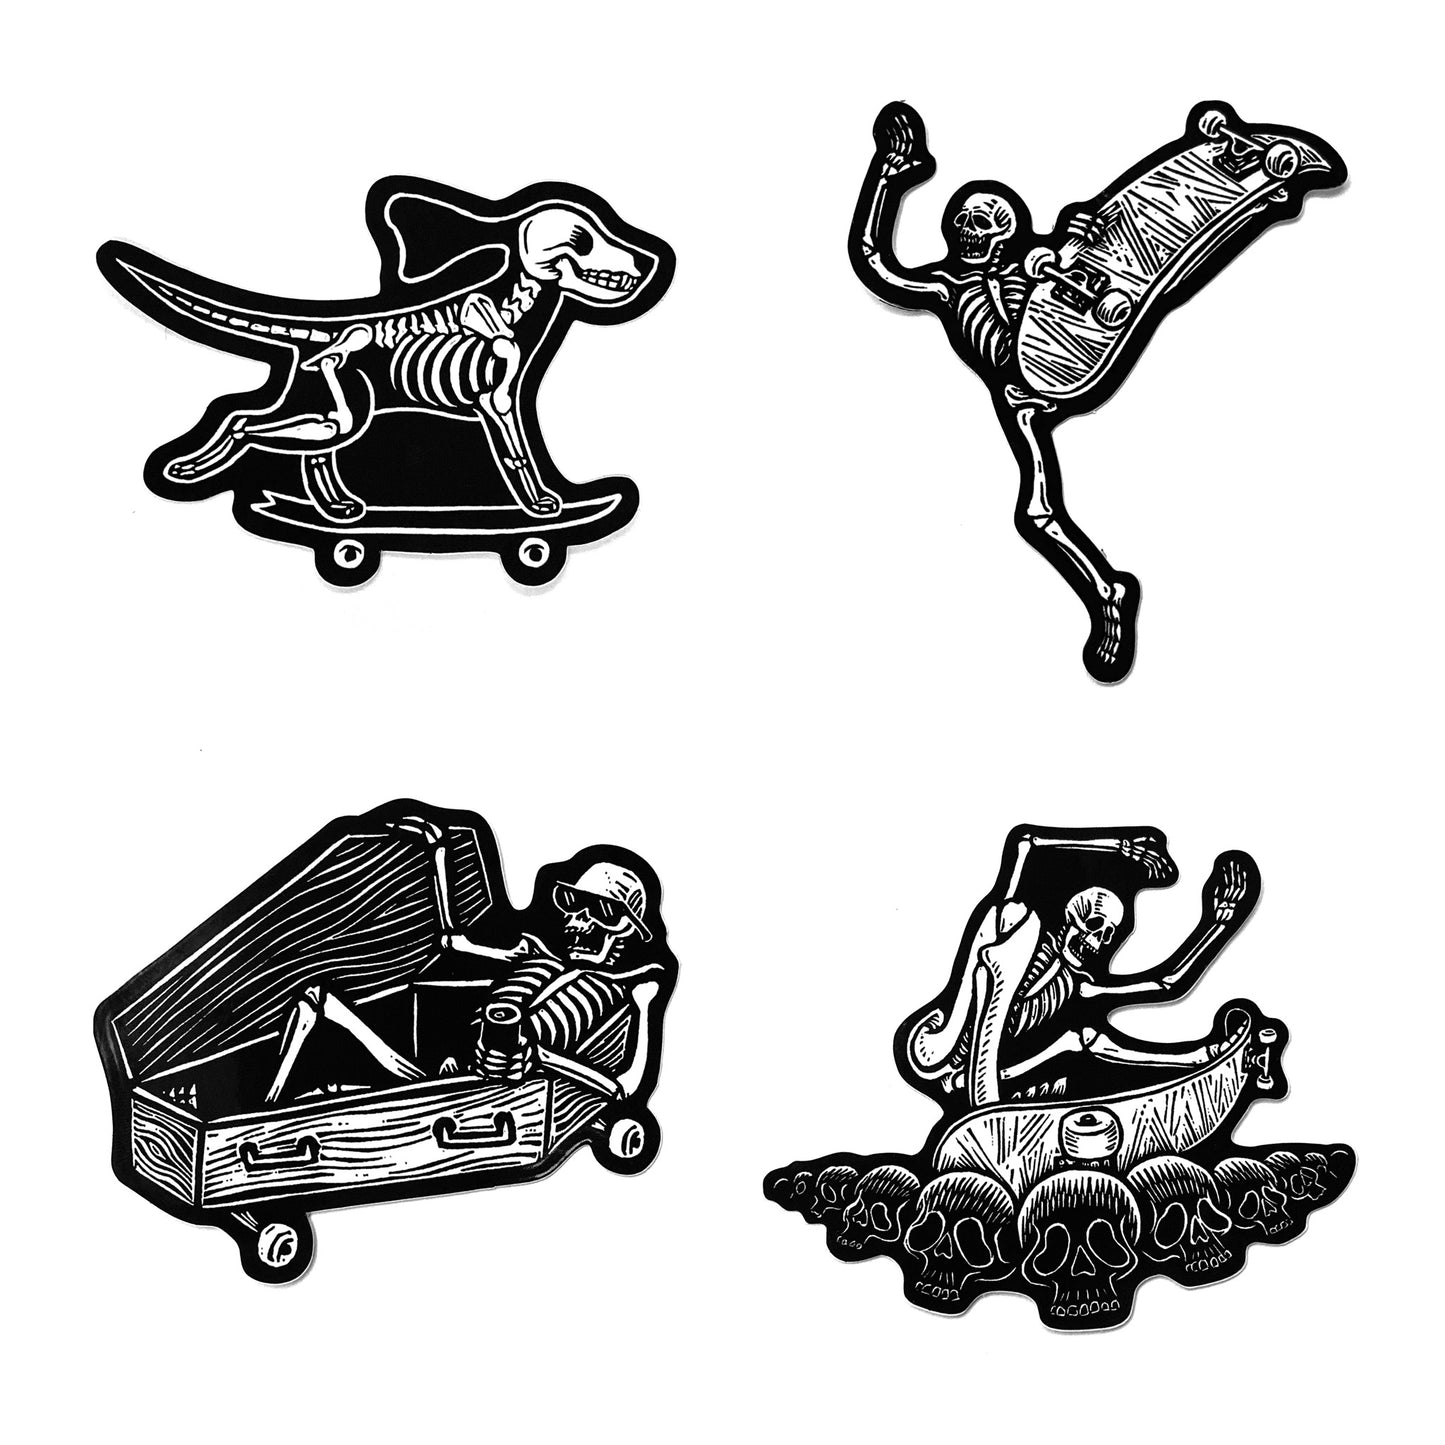 Skeleton Skaters Sticker Pack